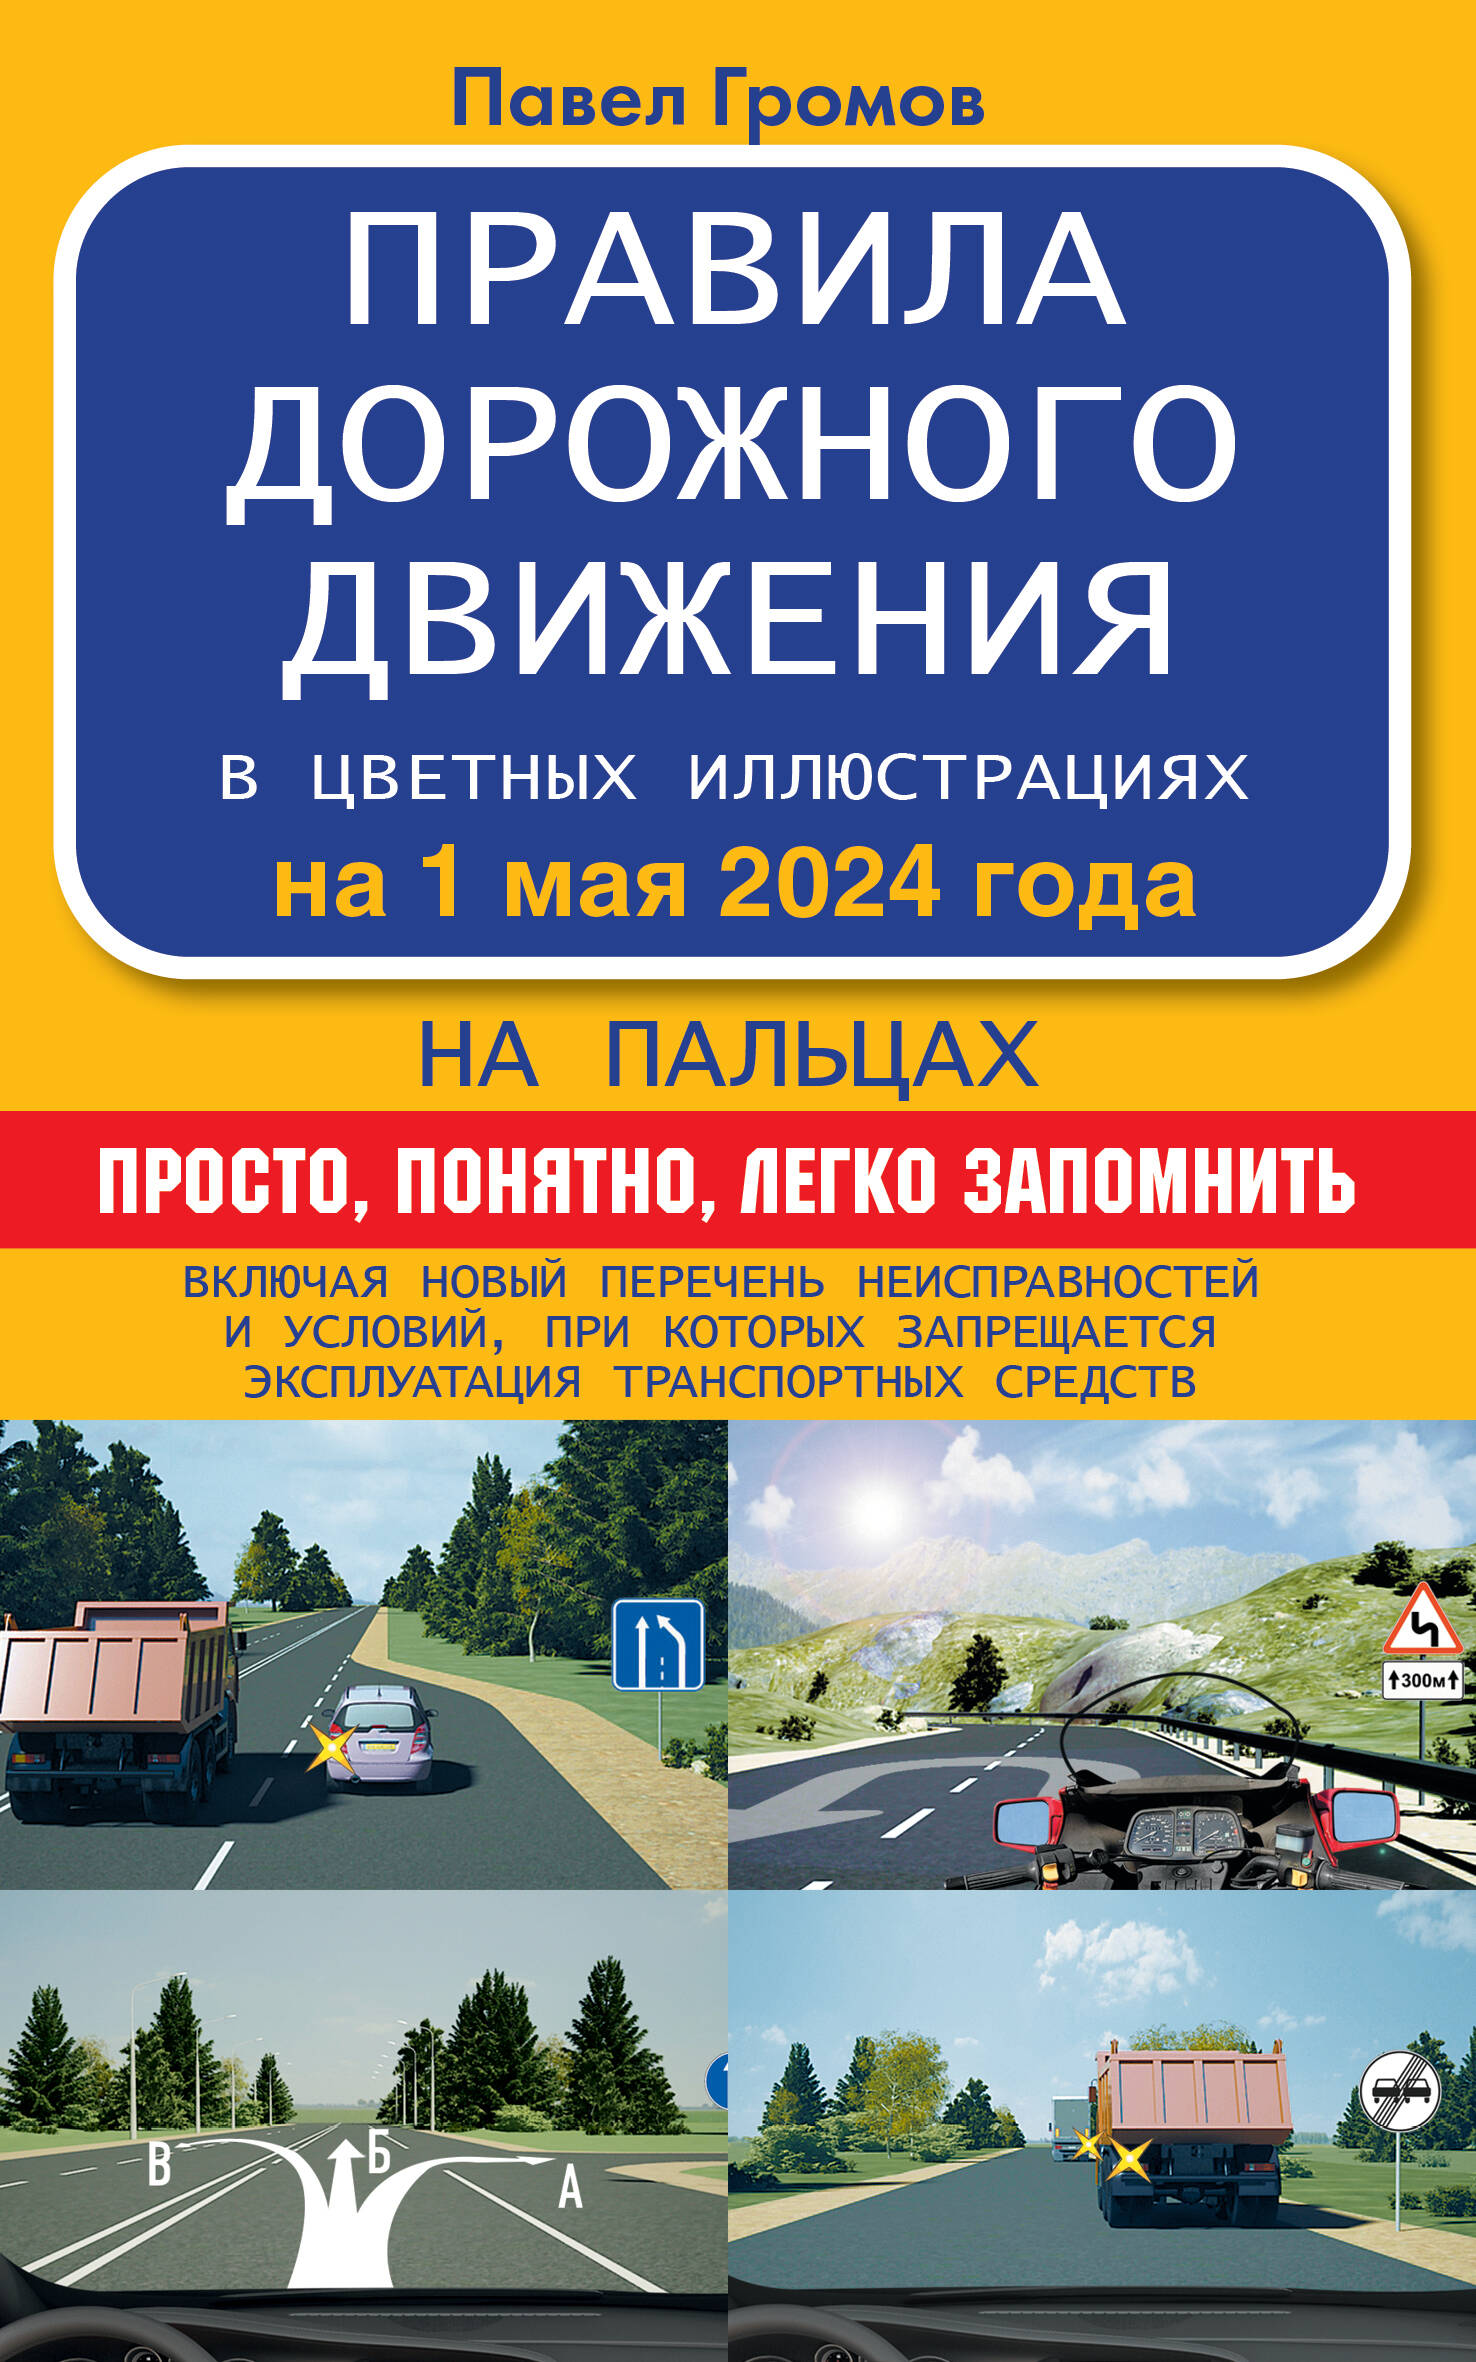 громов павел михайлович правила дорожного движения на пальцах просто понятно легко запомнить на 1 июля 2021 года Правила дорожного движения на пальцах: просто, понятно, легко запомнить на 1 мая 2024 года